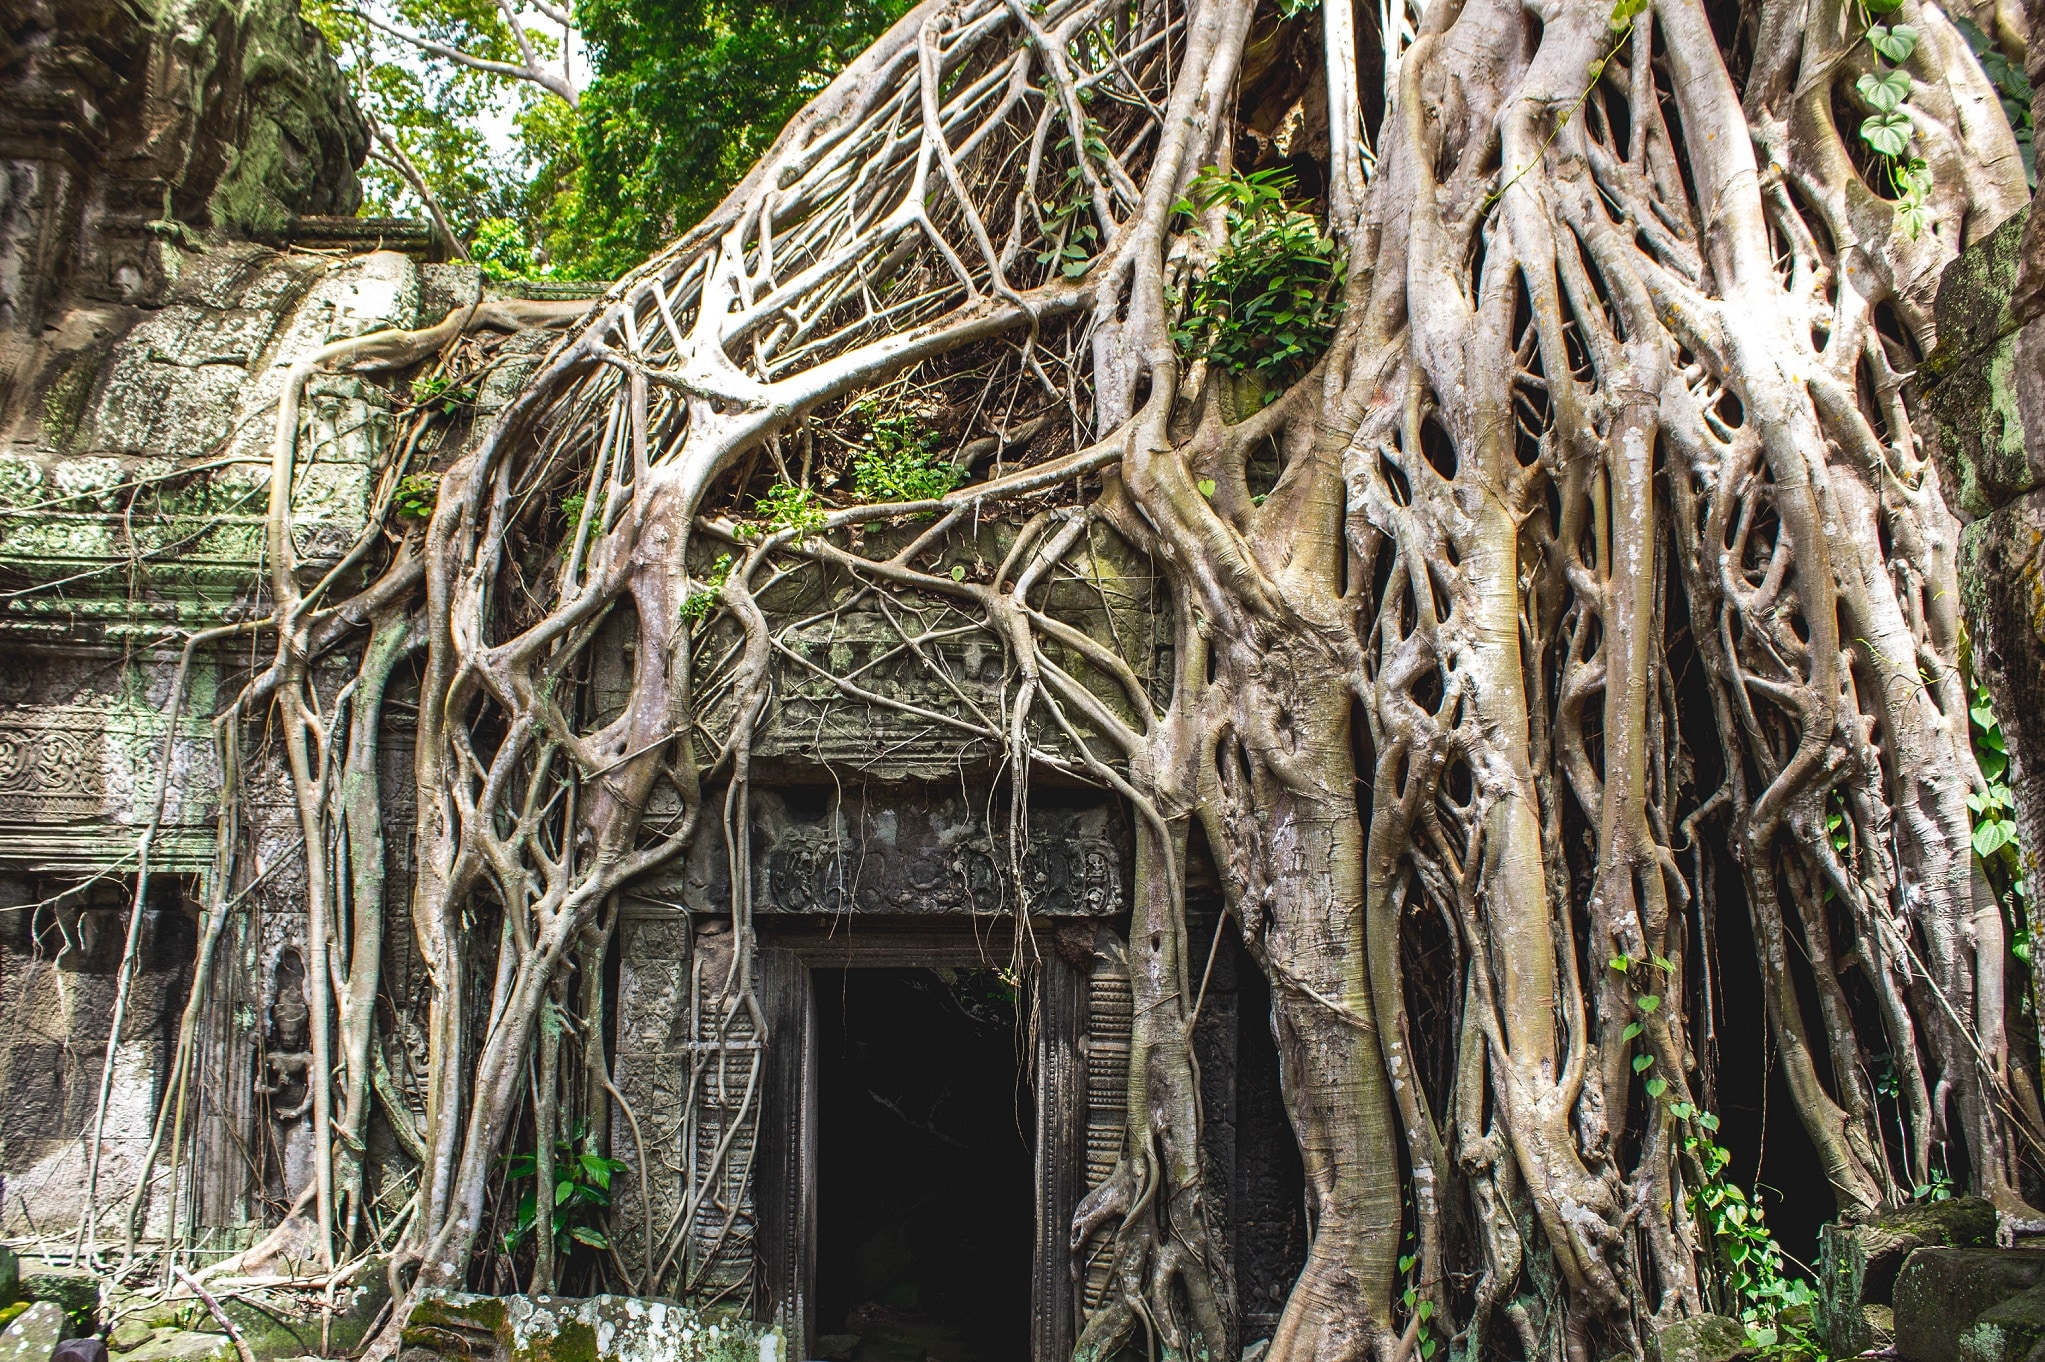 Angkor Wat – Cambodia